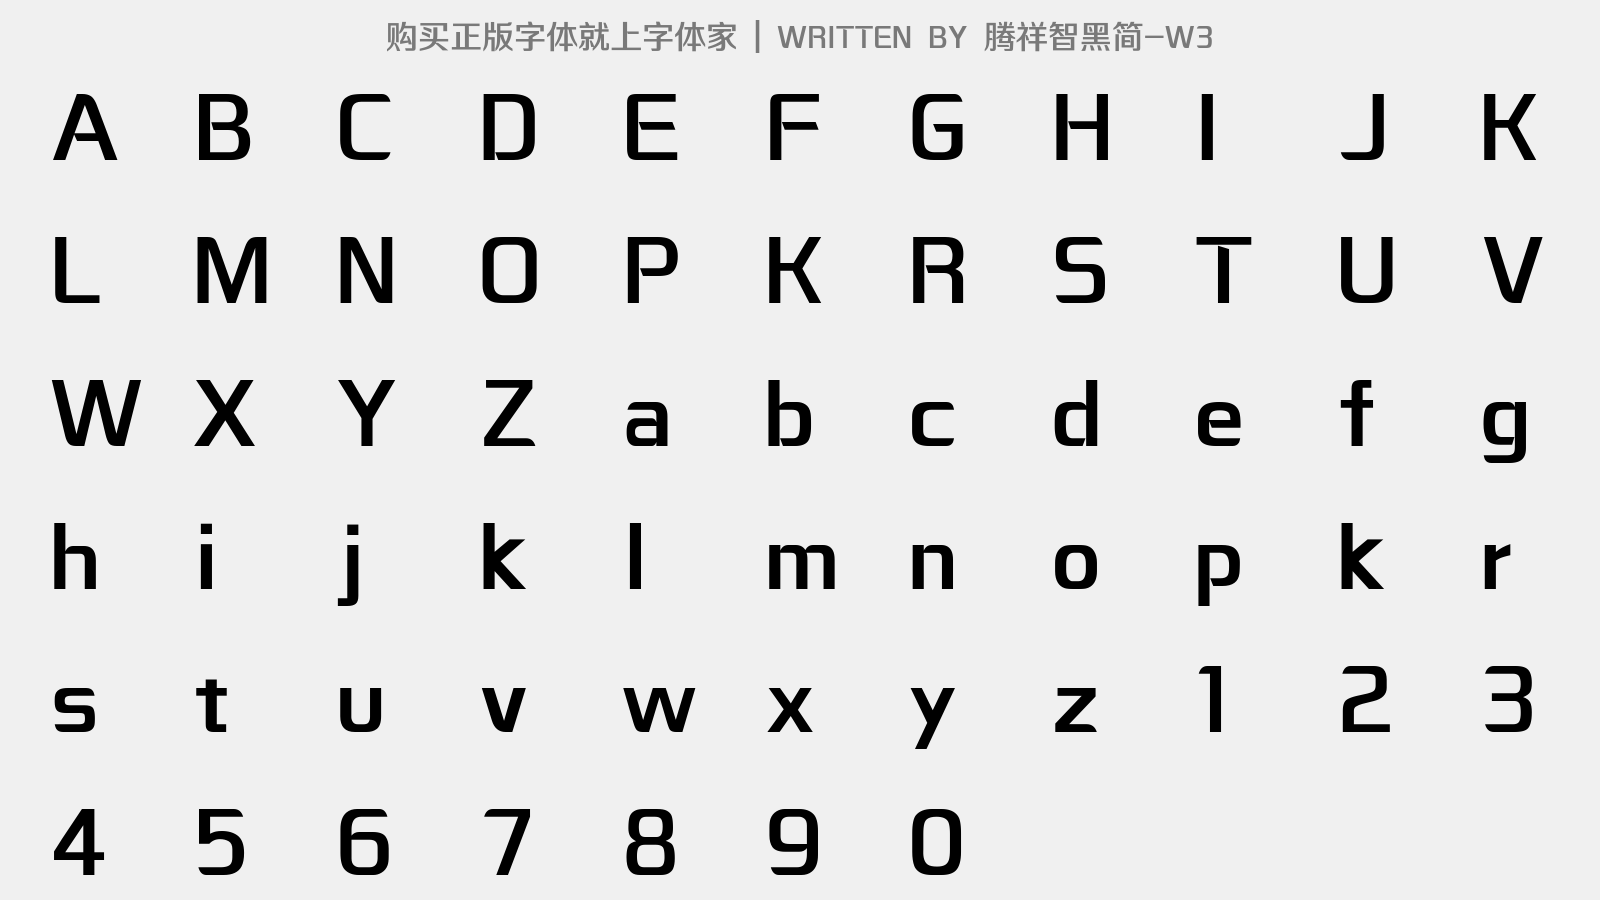 腾祥智黑简-W3 - 大写字母/小写字母/数字